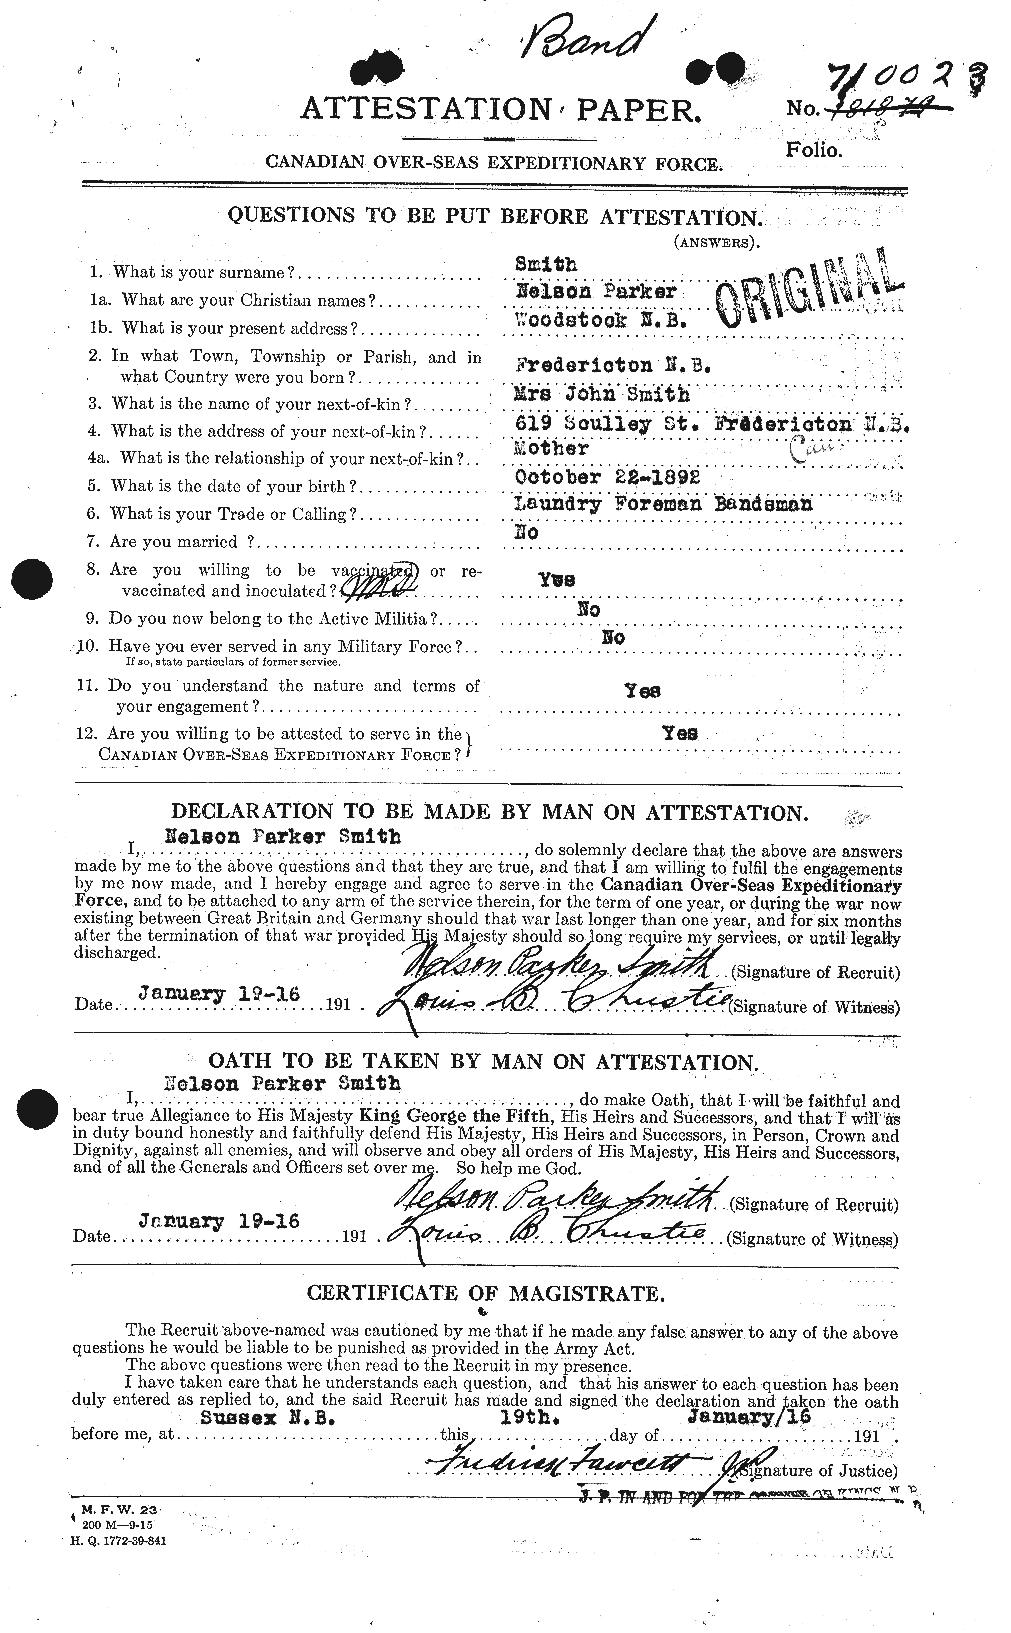 Dossiers du Personnel de la Première Guerre mondiale - CEC 104168a